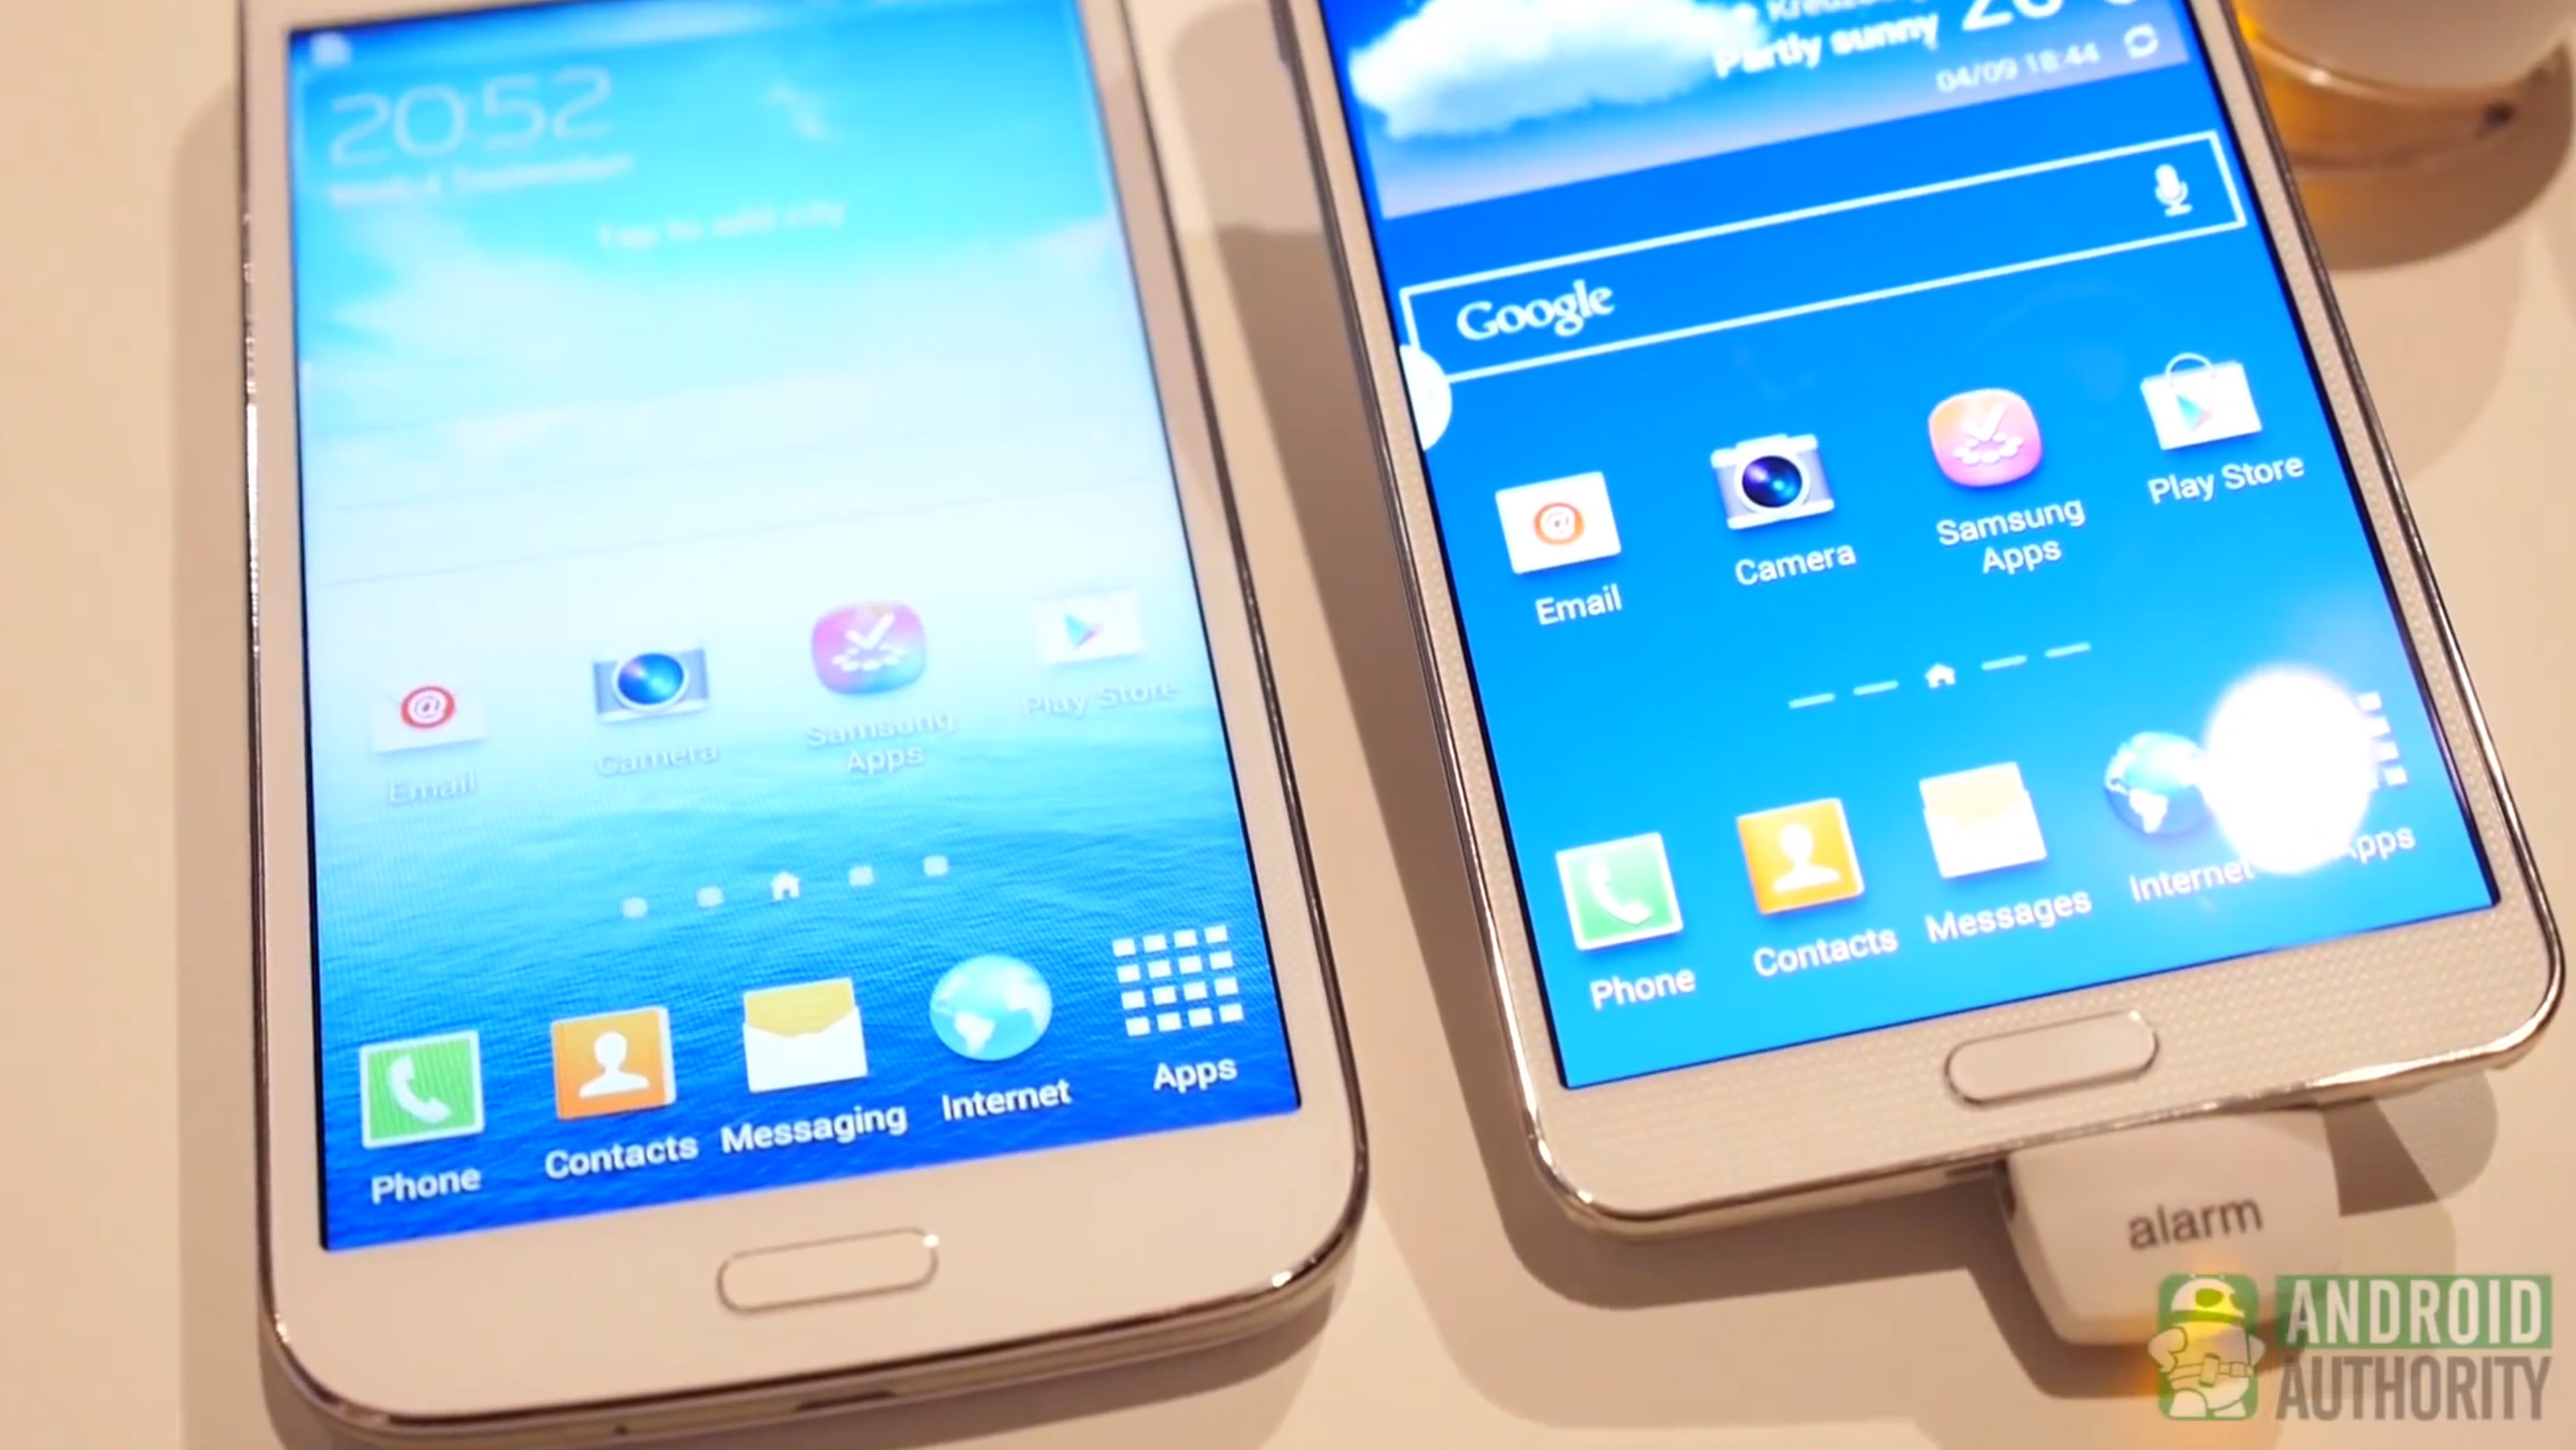 Galaxy Note 3 vs Galaxy Mega 5.8 front shot